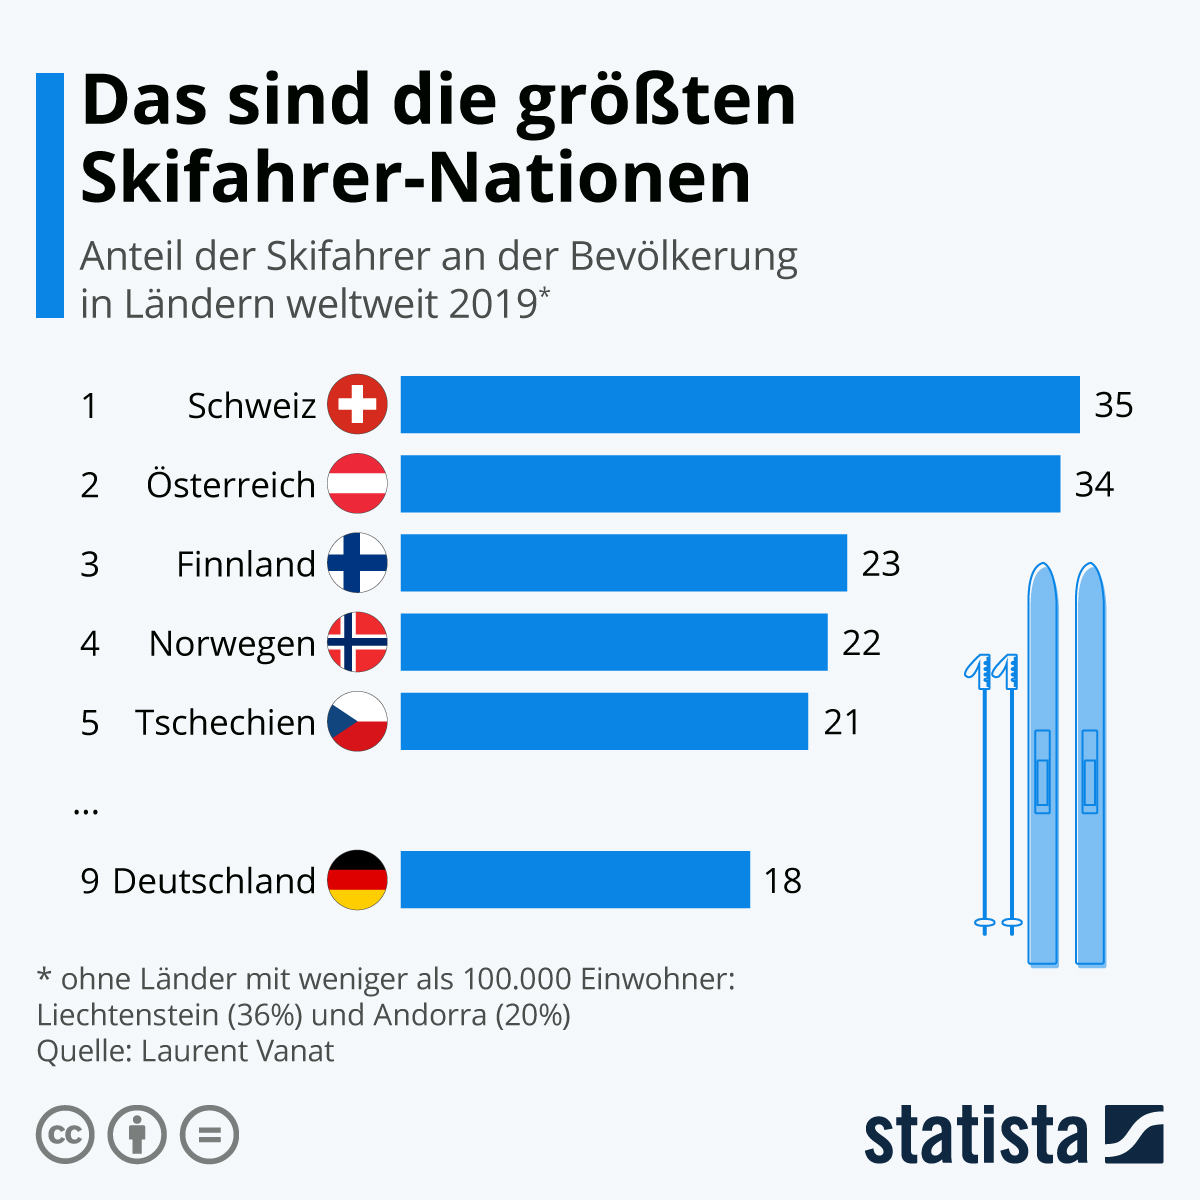 Die Alpen machen es möglich: Österreicher und Schweizer zählen zu den besonders Skisport-begeisterten Nationalitäten der Welt. Laut einem aktuellen Report der Consultinggruppe Laurent Vanat fahren 35 Prozent der Schweizer und 34 Prozent der Österreicher Ski. Nur unter den Liechtensteinern ist der Anteil noch höher (36 Prozent) - aufgrund der geringen Bevölkerungszahl des Landes sind sie jedoch im Ranking nicht mit aufgeführt.